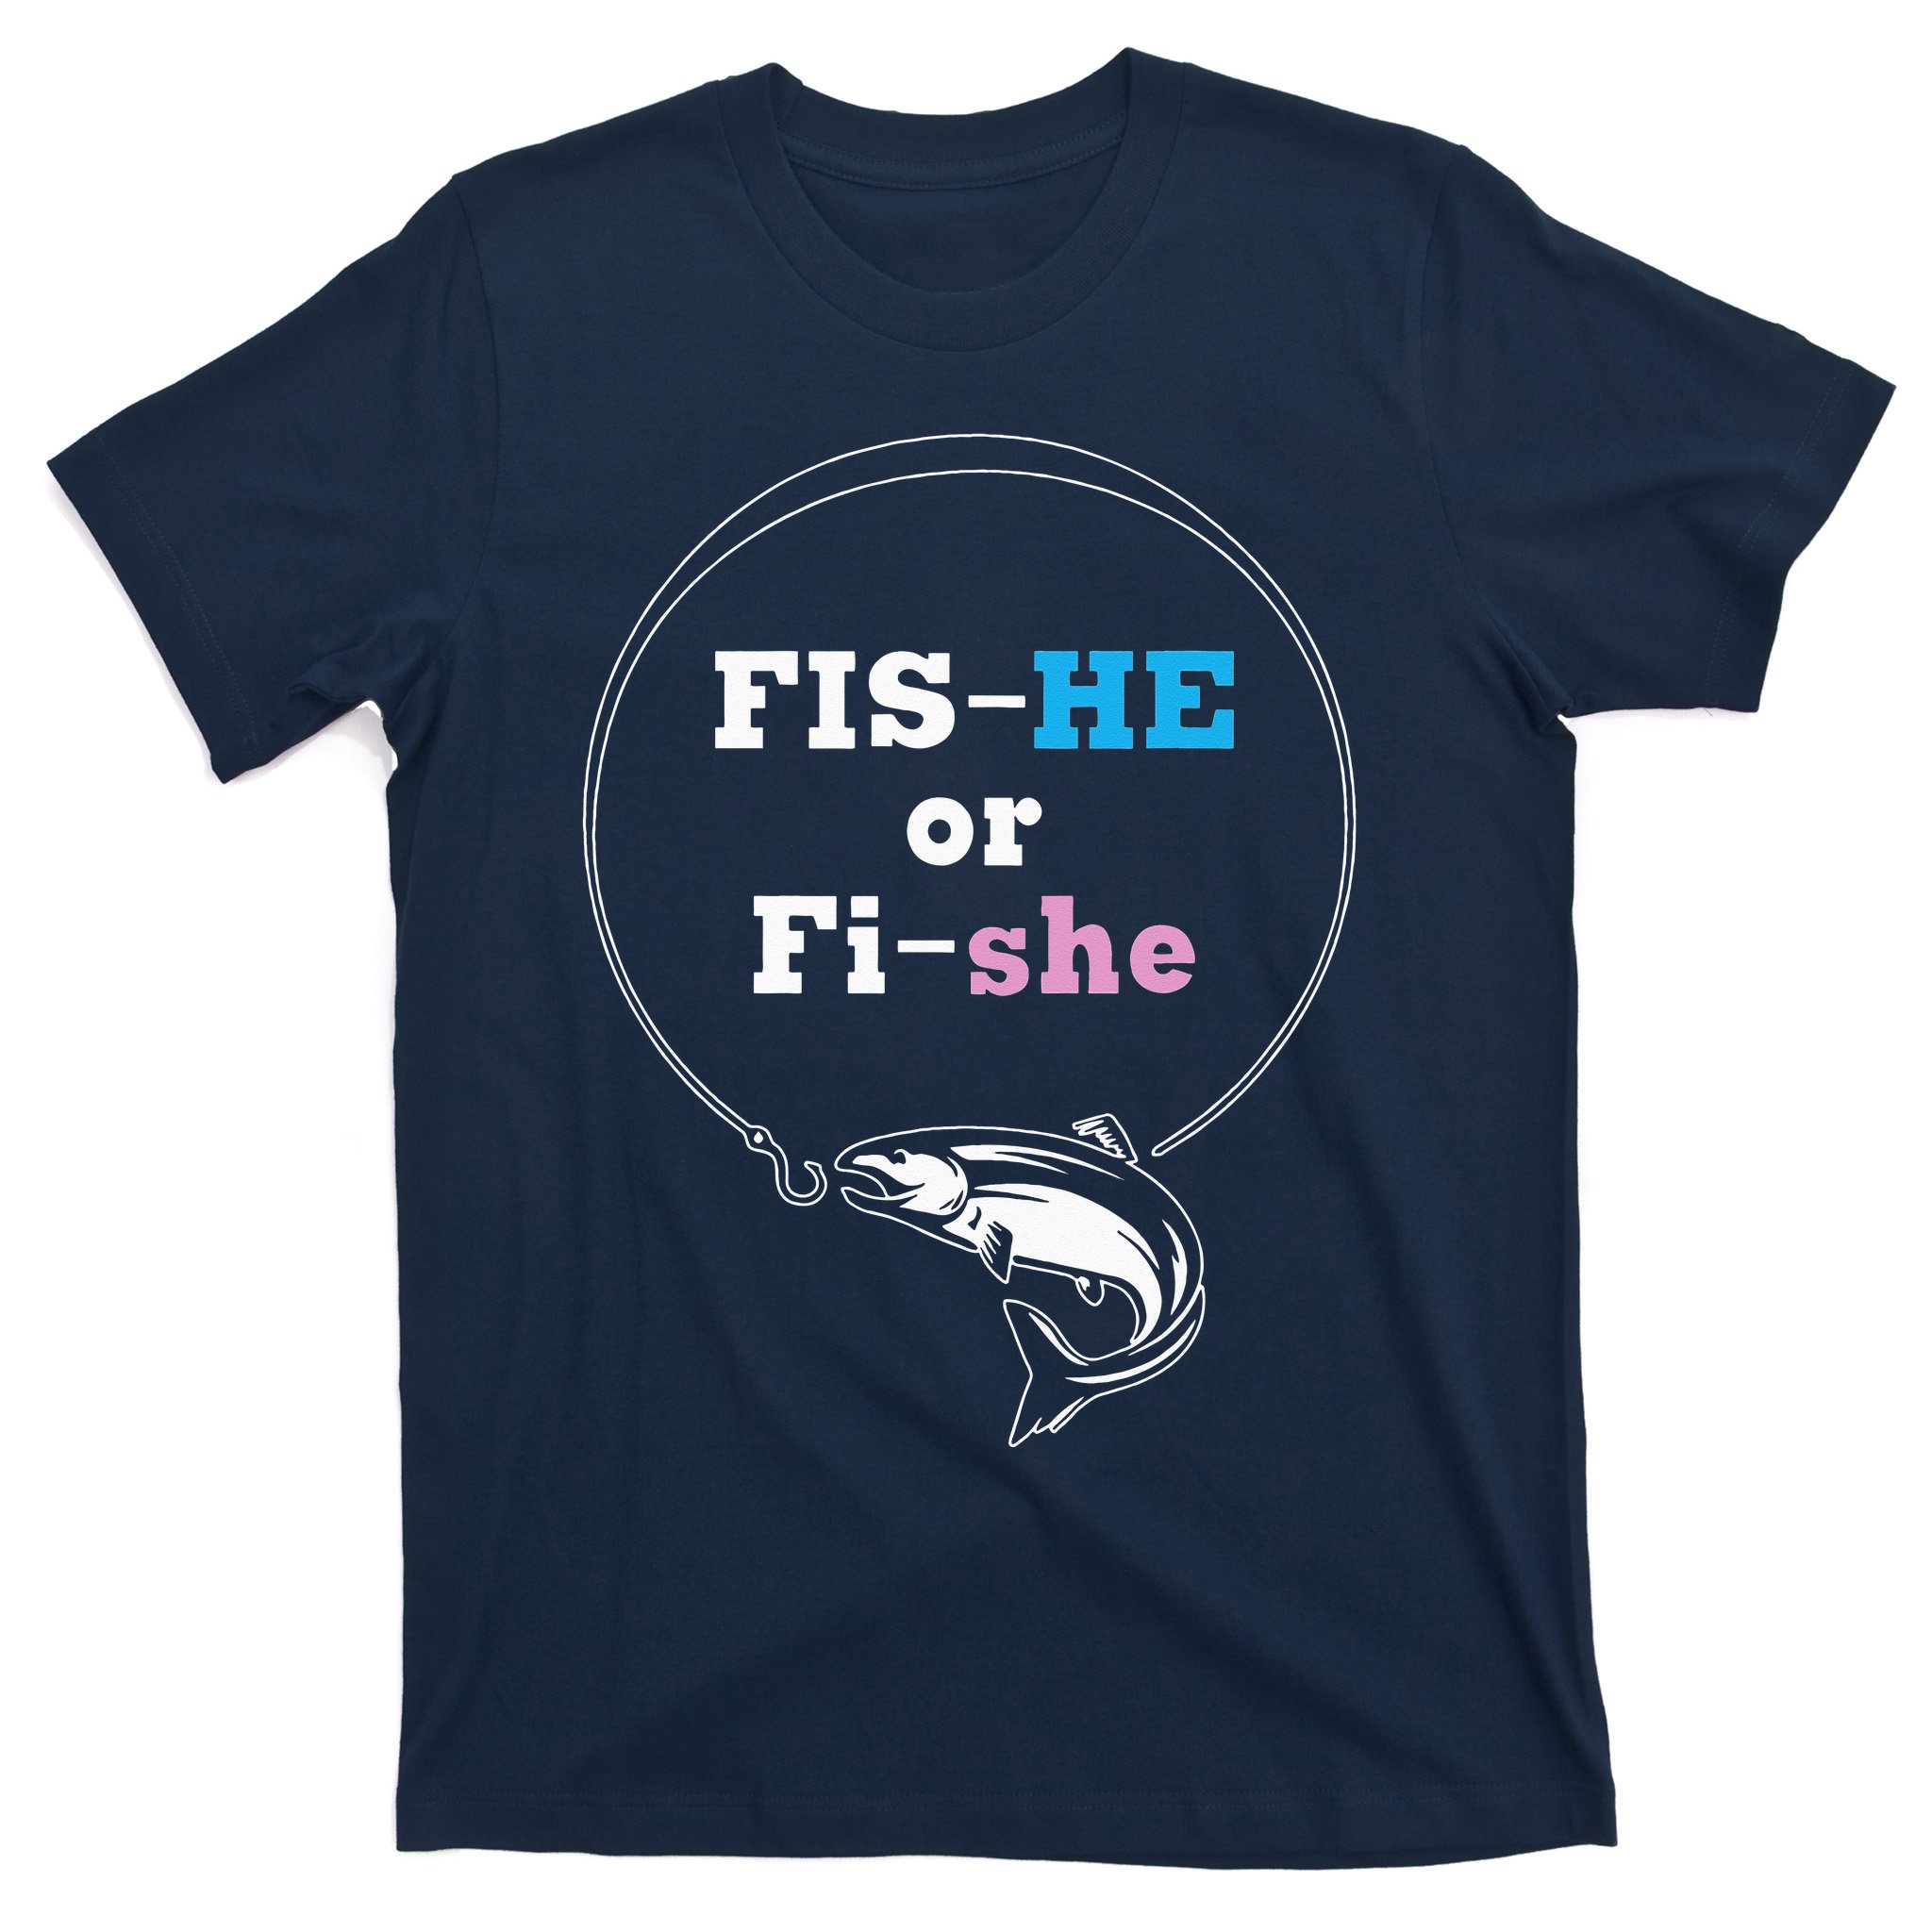 Fish-He or Fish-She Gender Reveal Fishing Fishermen T-Shirt